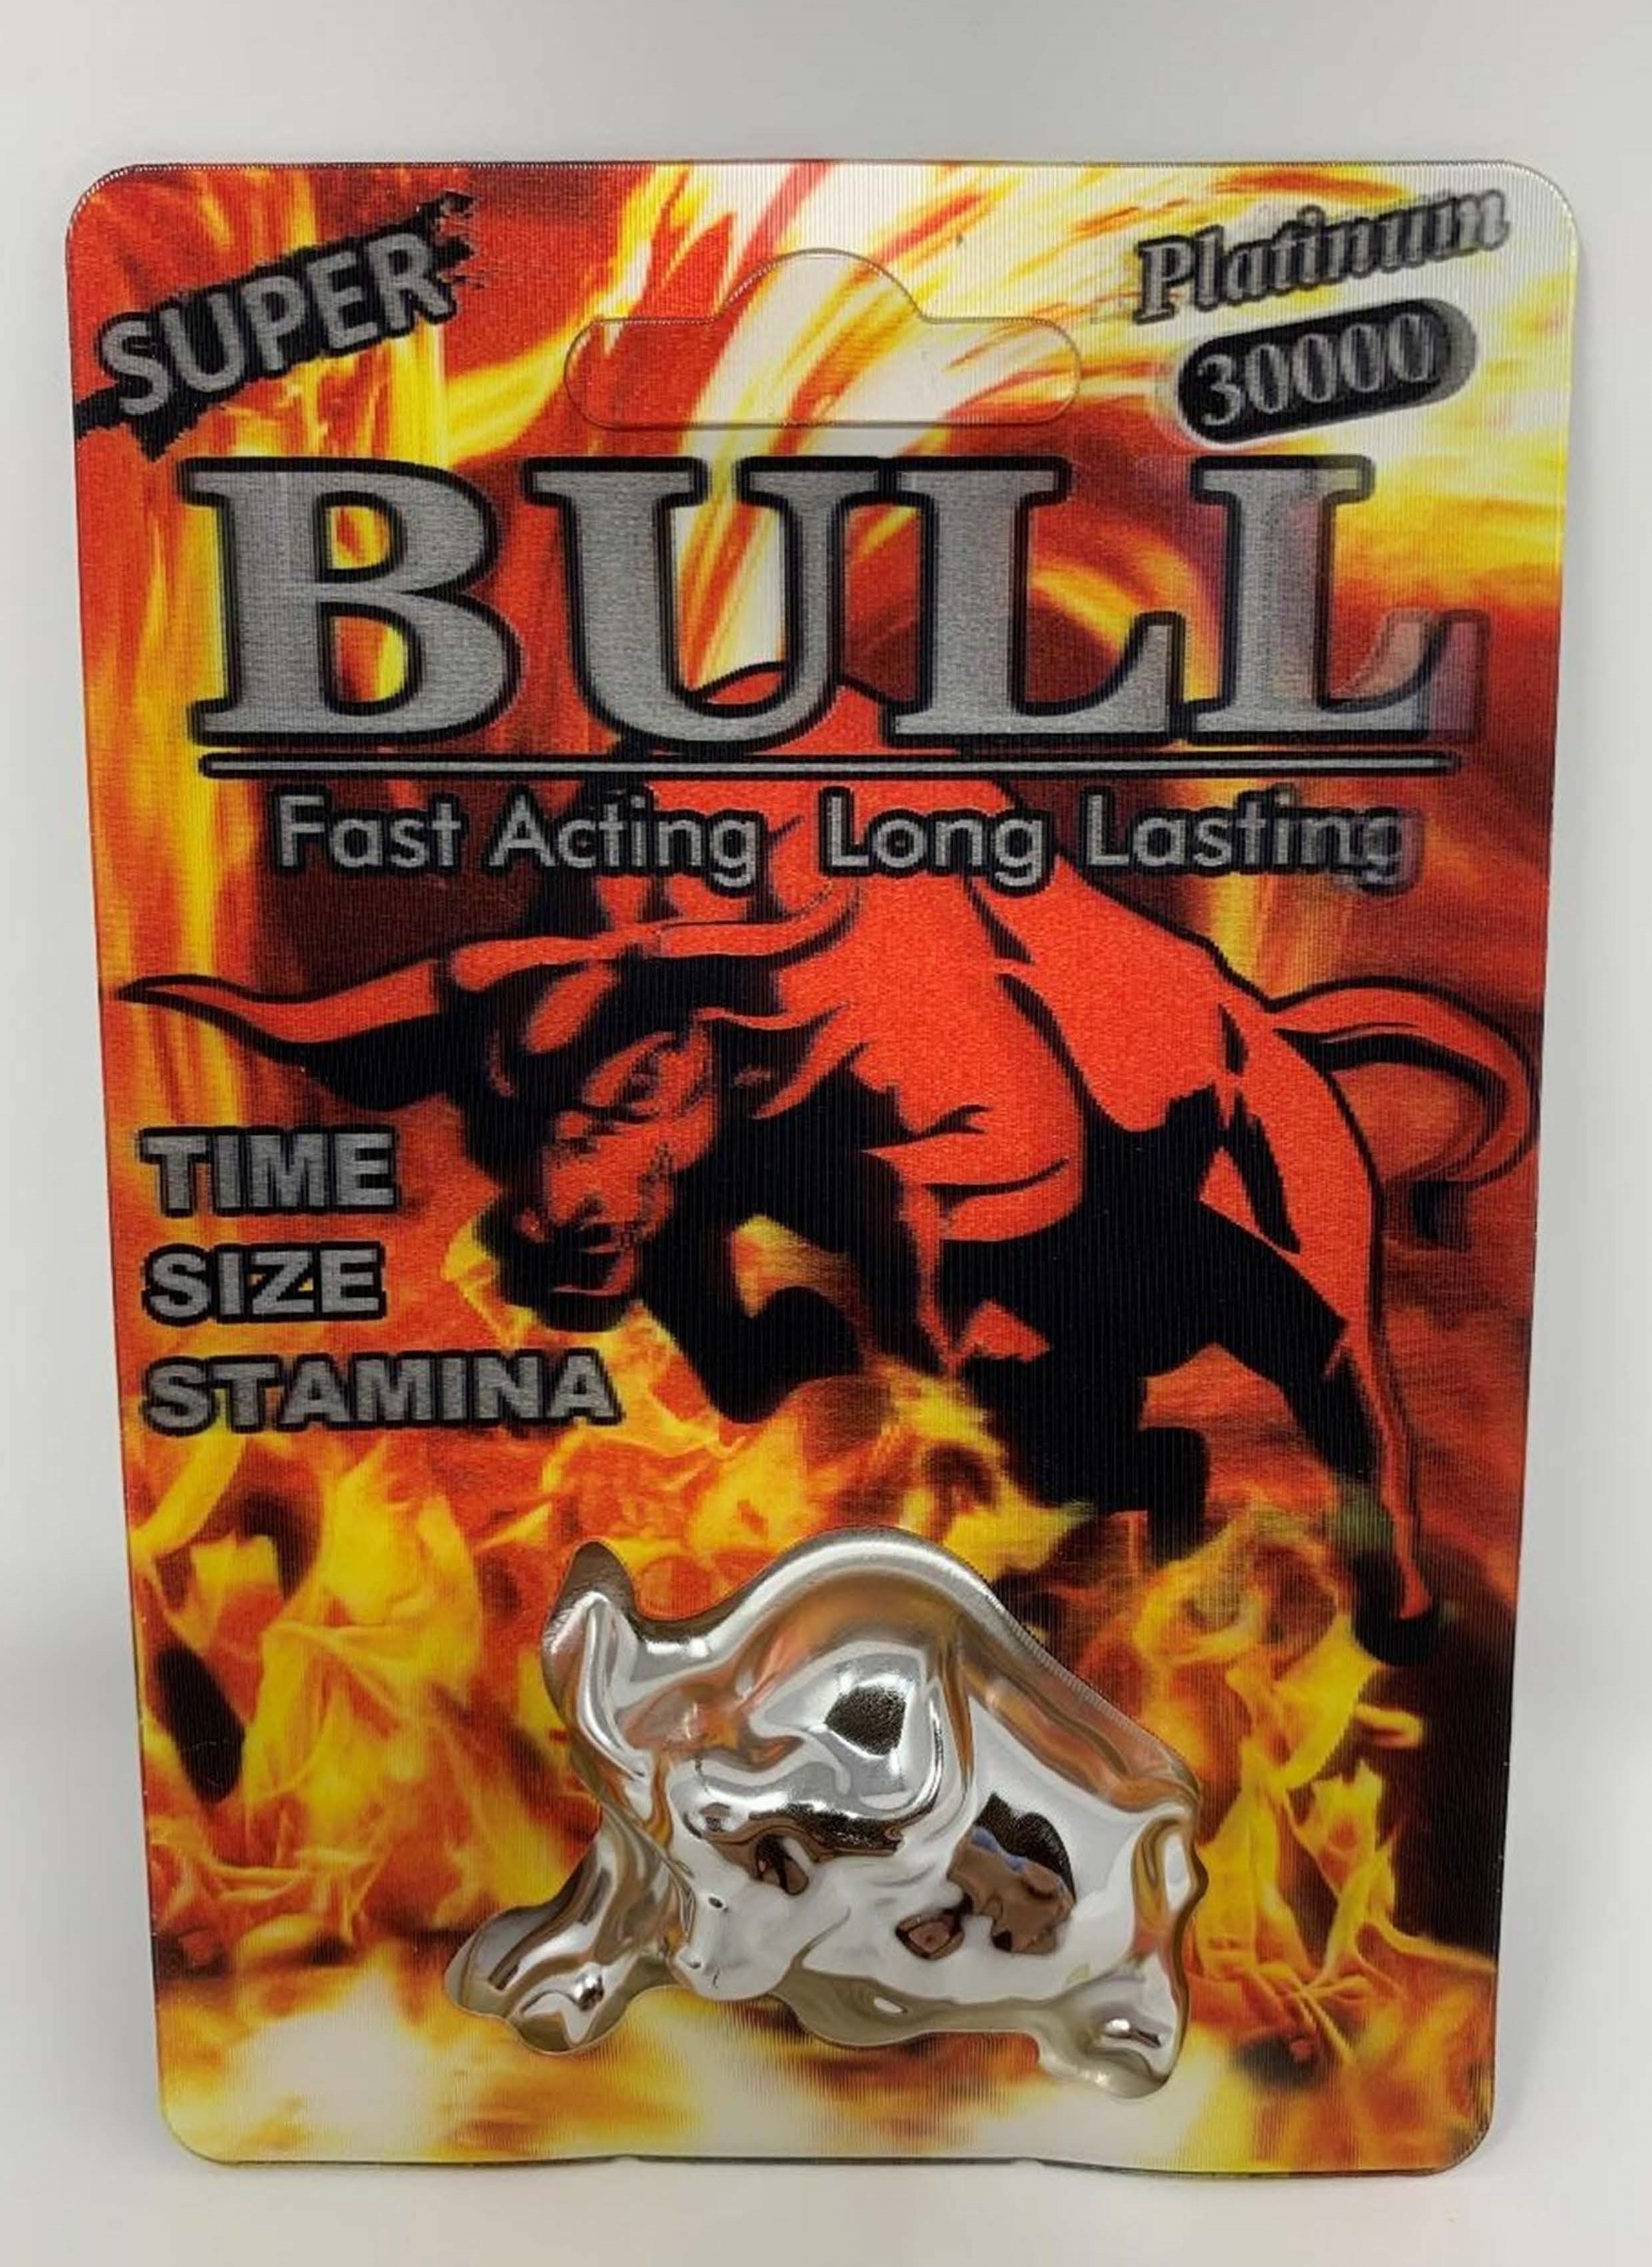 Billede af det ulovlige produkt: Bull Platinum 30000